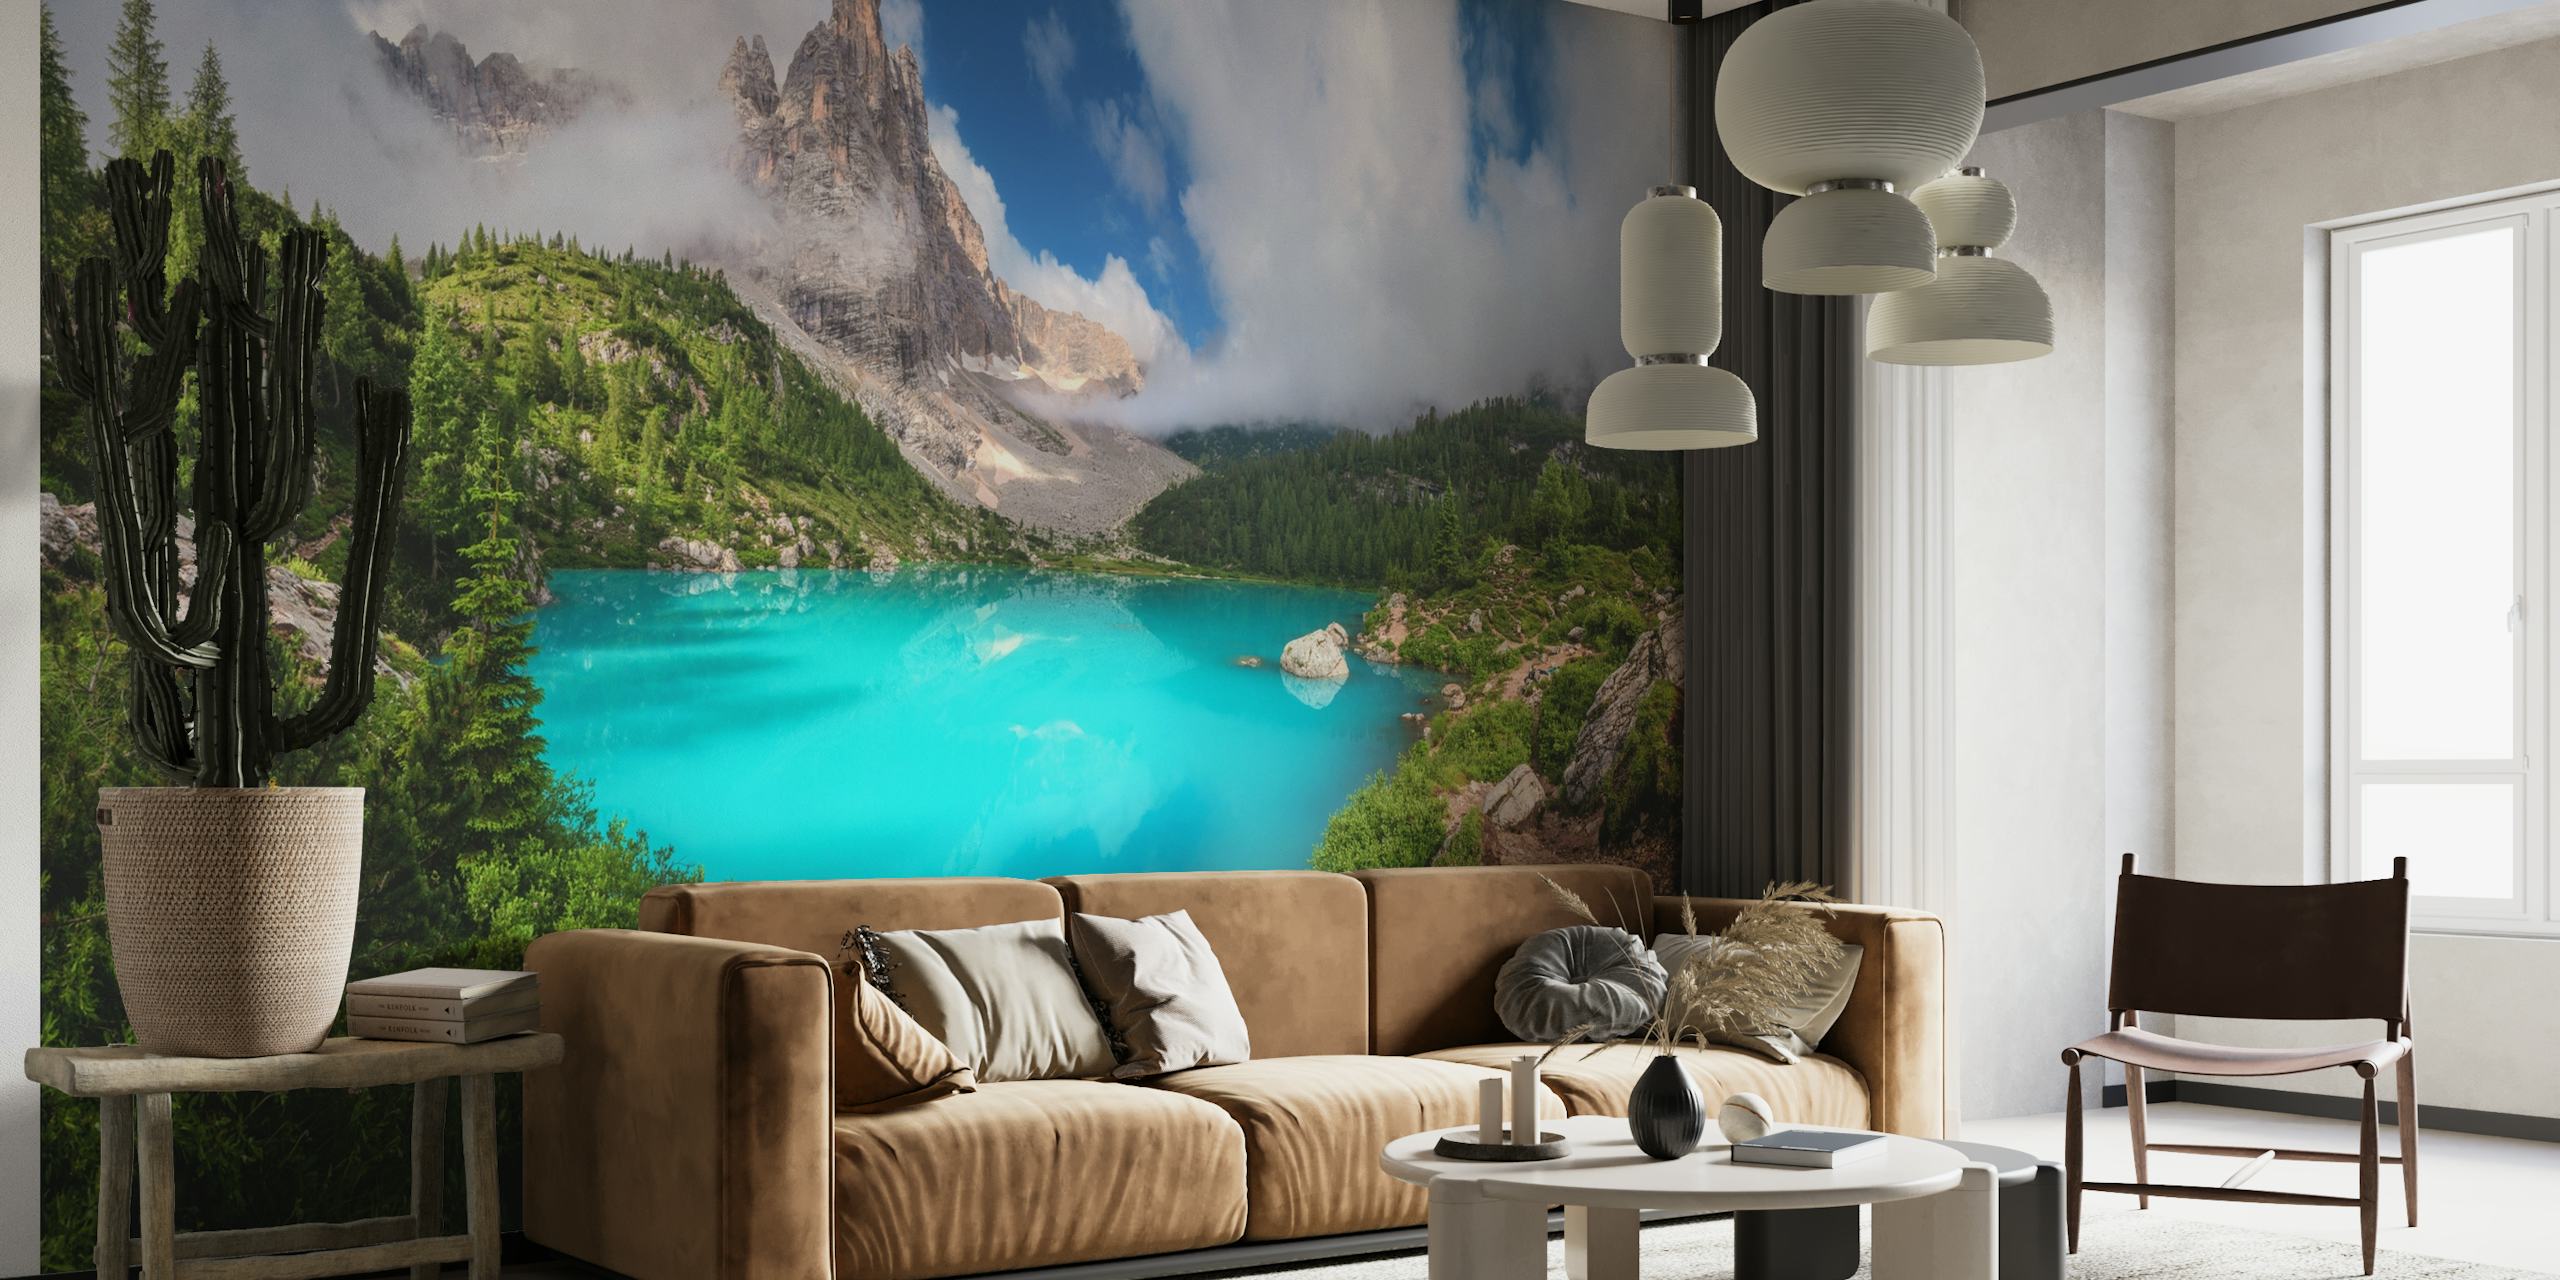 Lago di Sorapis panoramic wall mural showing turquoise lake and Italian Alps